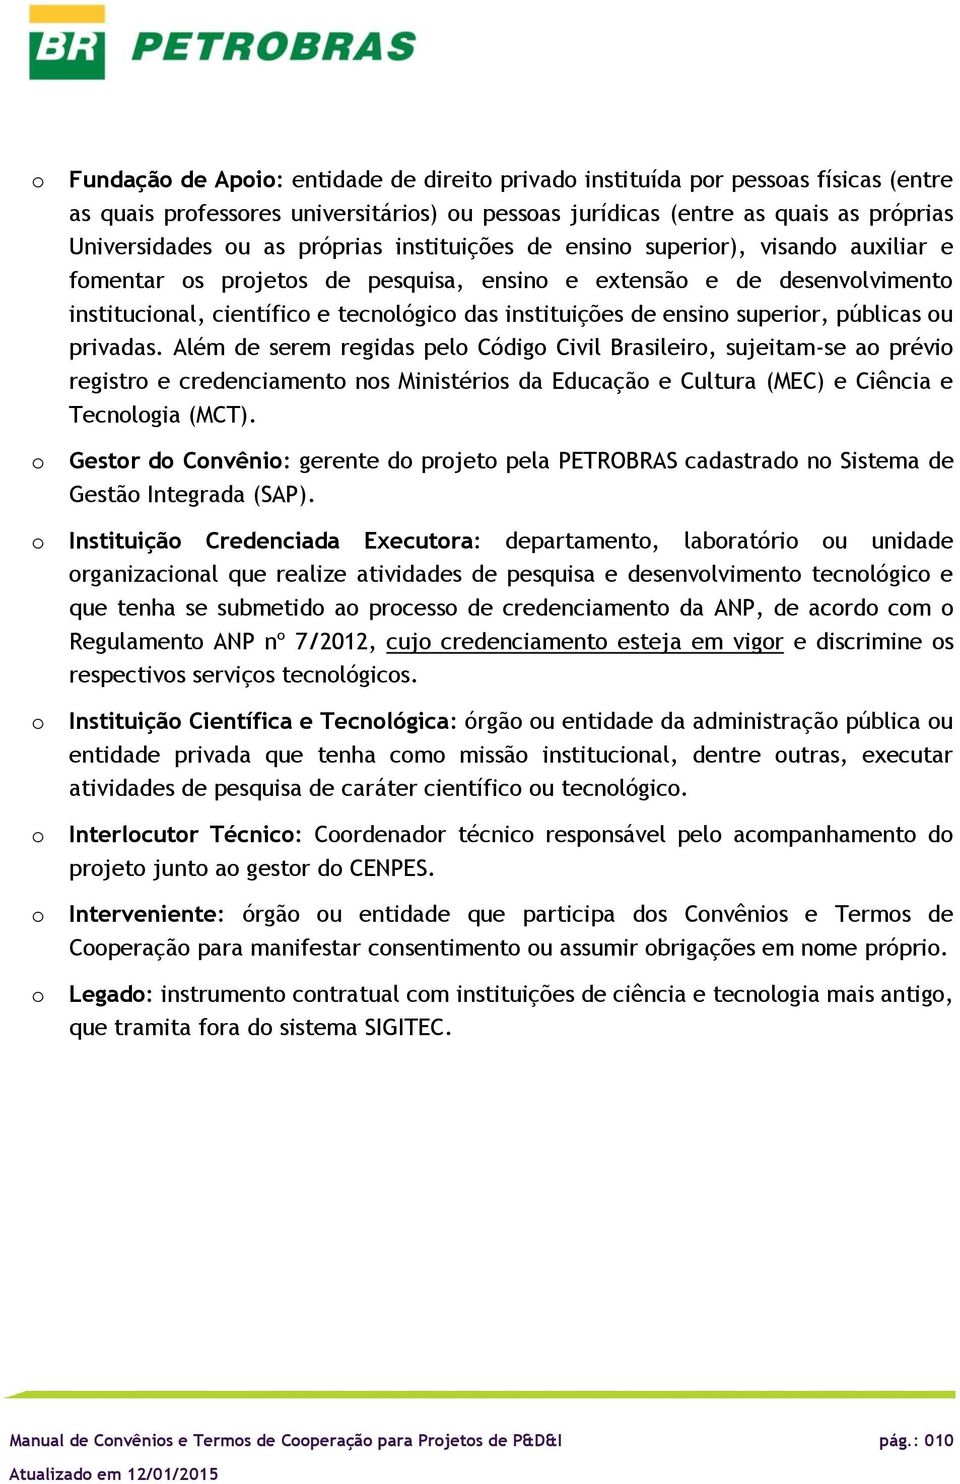 Além de serem regidas pel Códig Civil Brasileir, sujeitam-se a prévi registr e credenciament ns Ministéris da Educaçã e Cultura (MEC) e Ciência e Tecnlgia (MCT).